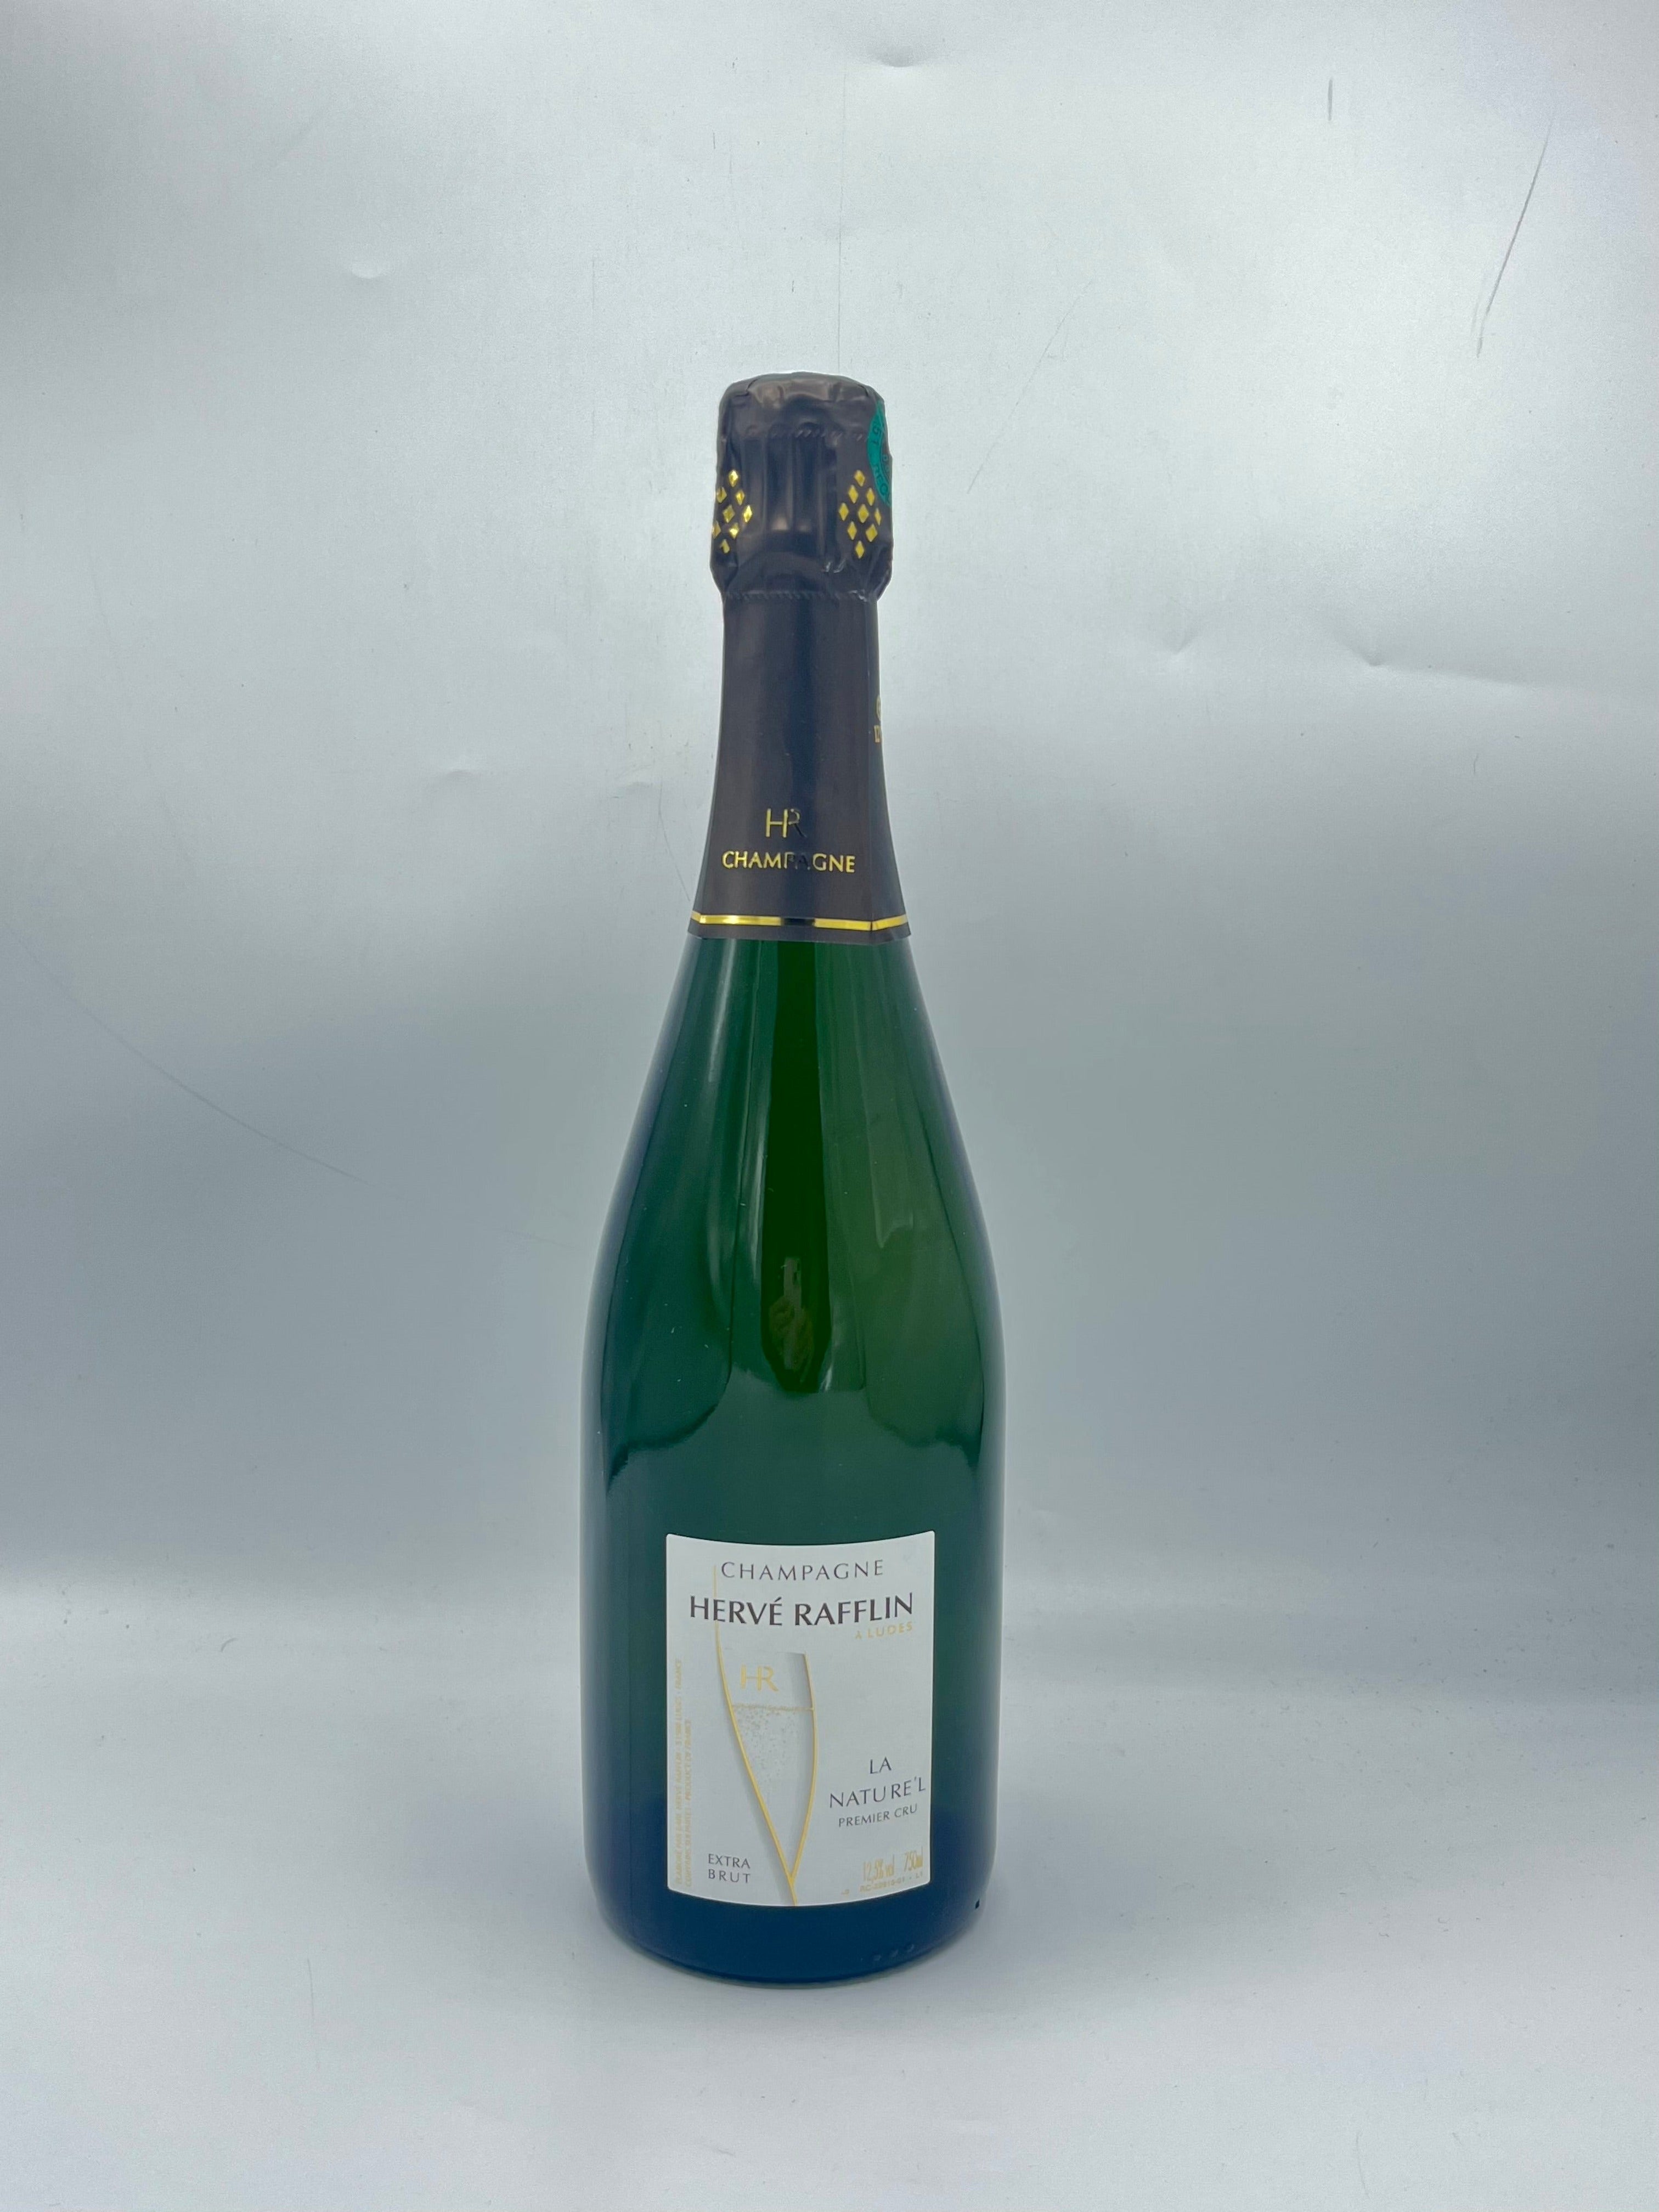 Champagne 1er Cru “La Nature’l” Extra Brut – Hervé Rafflin 